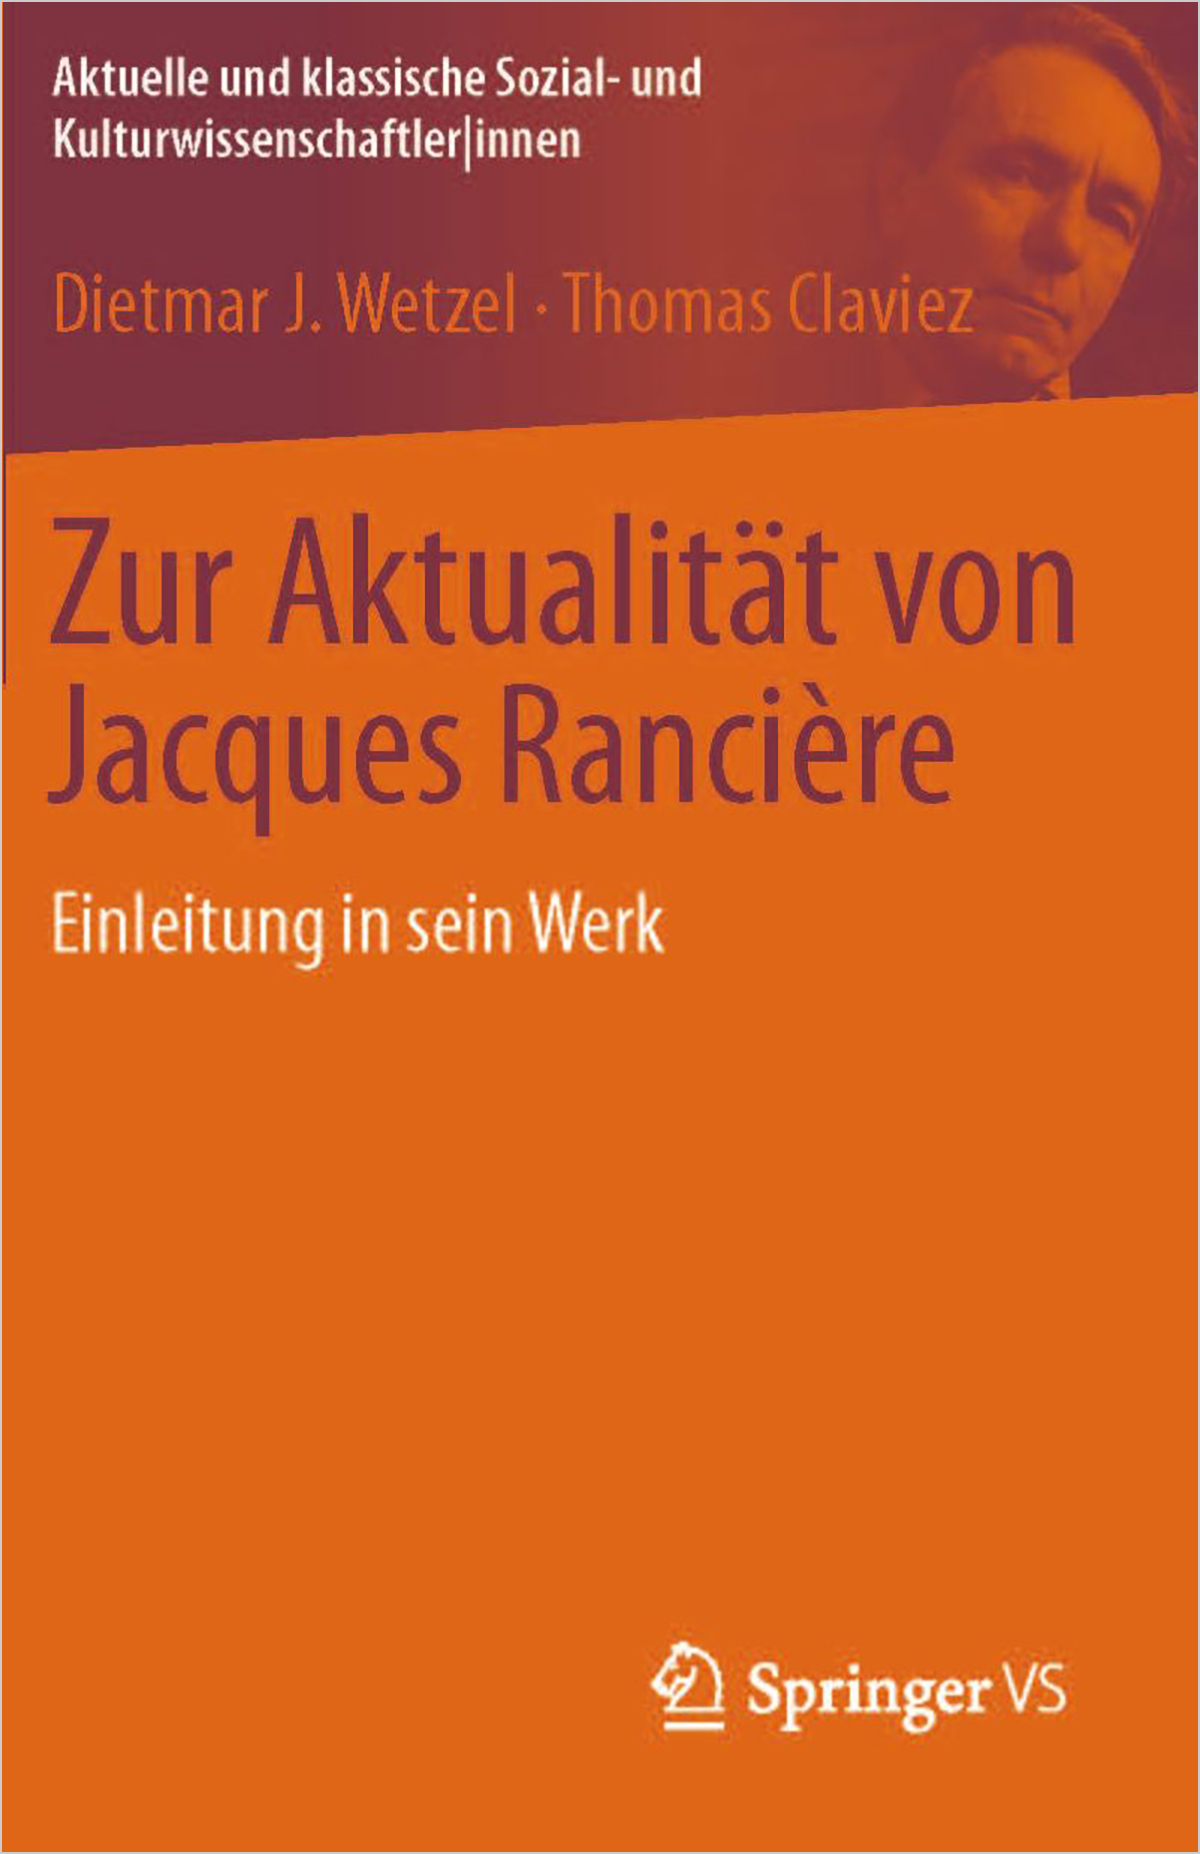 Zur Aktualität von Jacques Ranciere. Wiesbaden: VS Verlag, 2016.